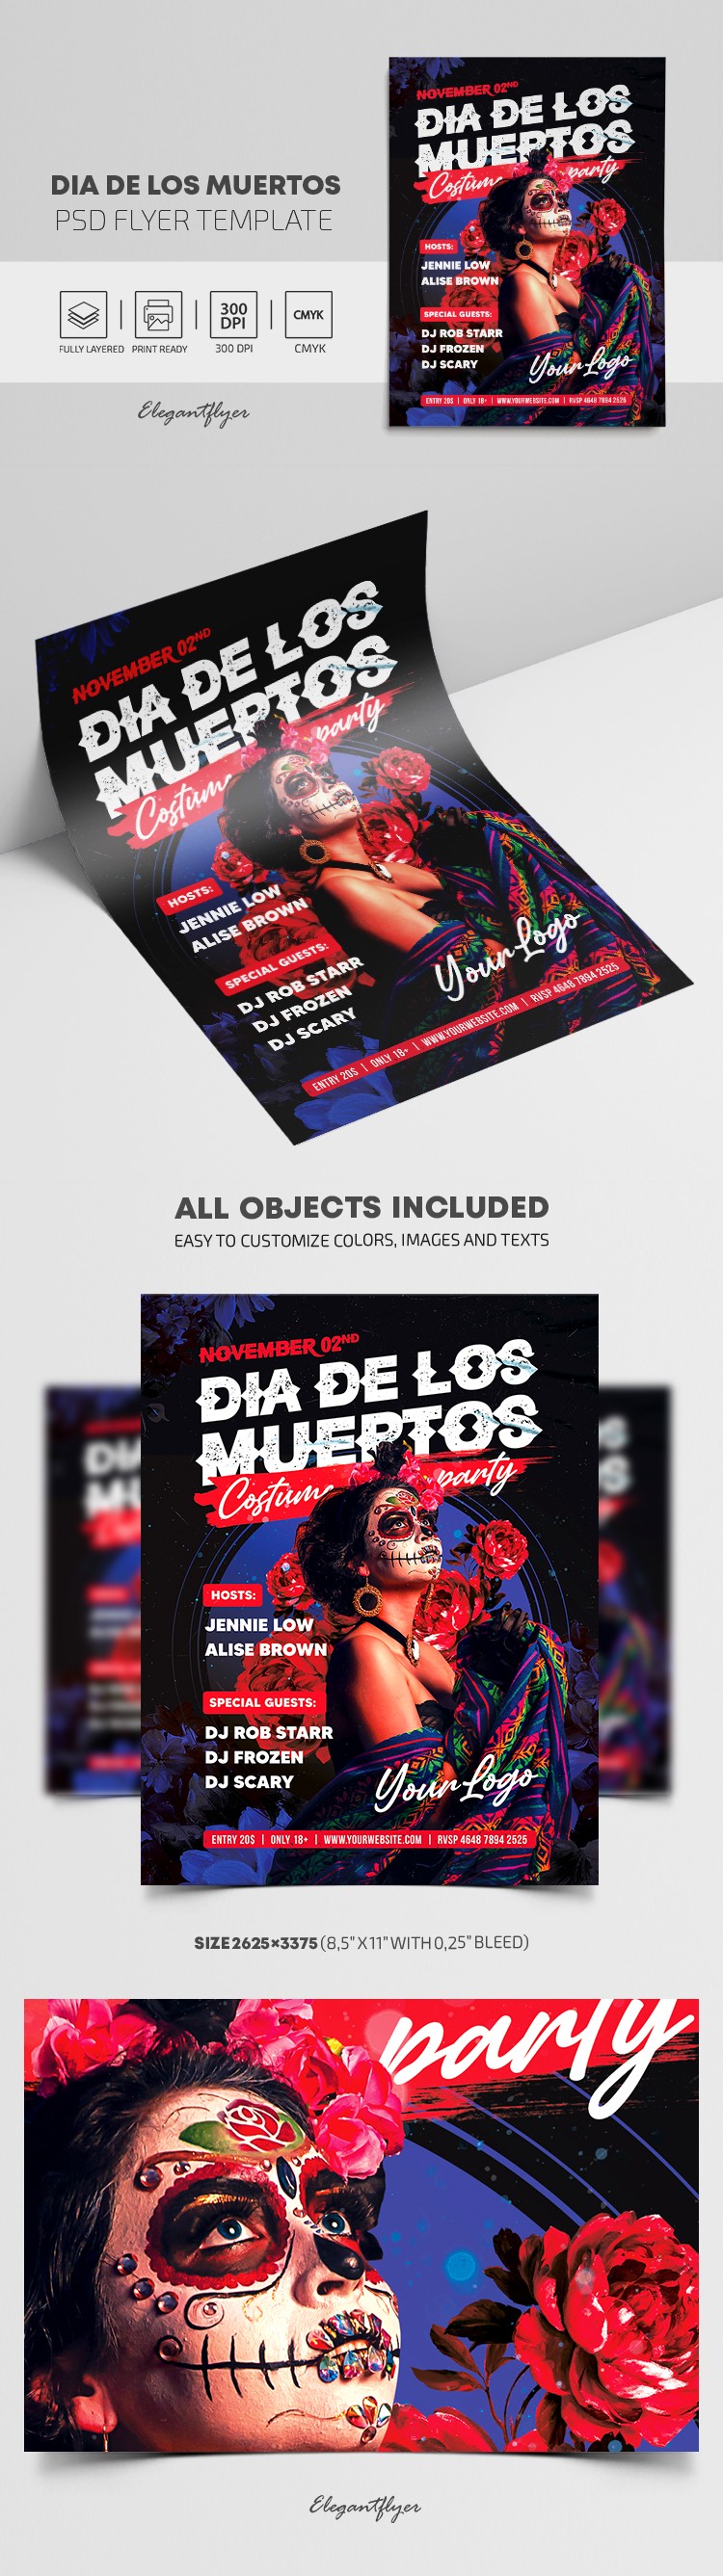 Dia de Los Muertos Flyer by ElegantFlyer